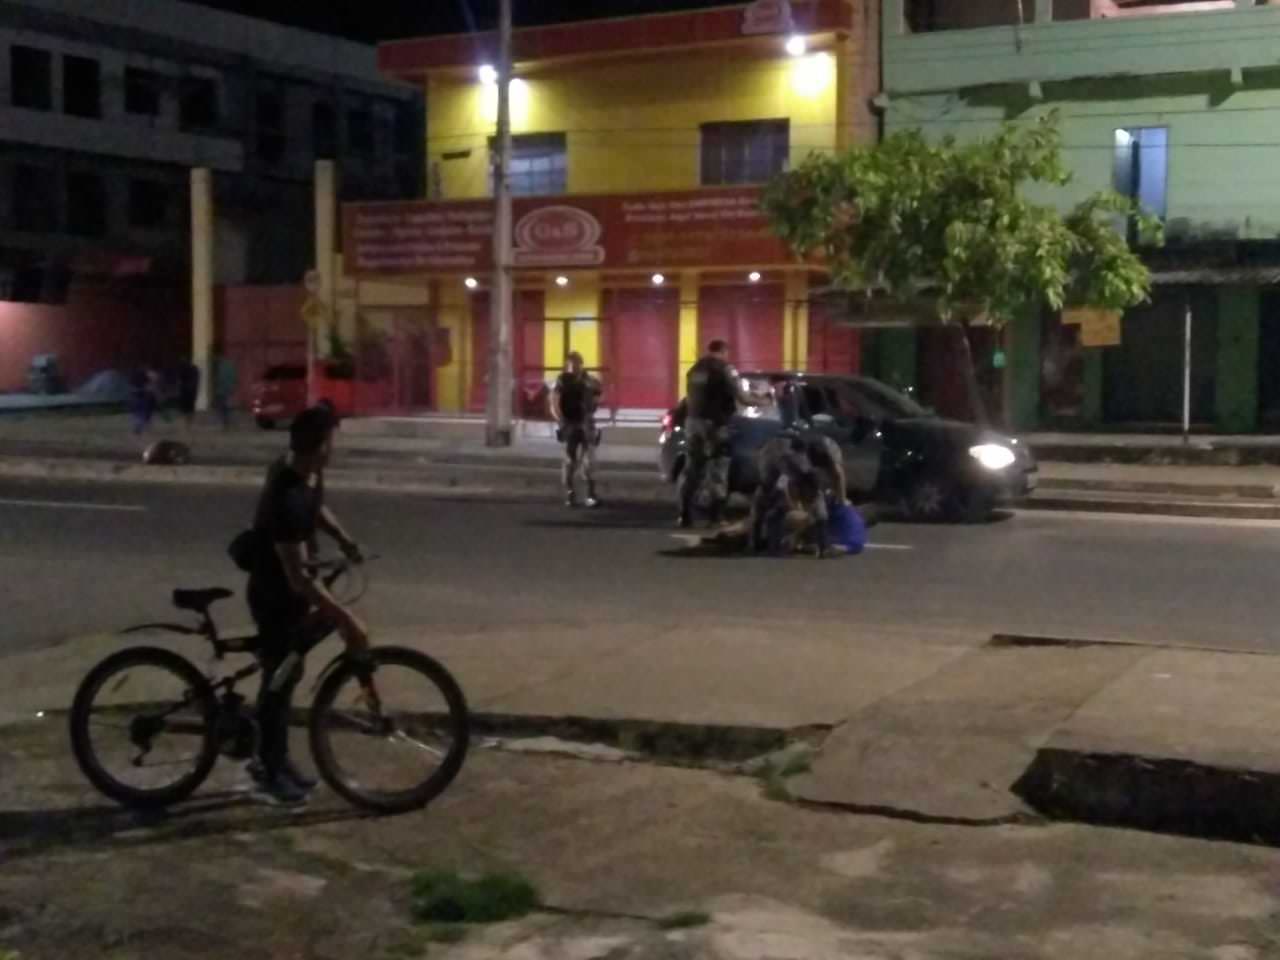 Criminosos trocam tiros com polícia e acabam mortos em Manaus